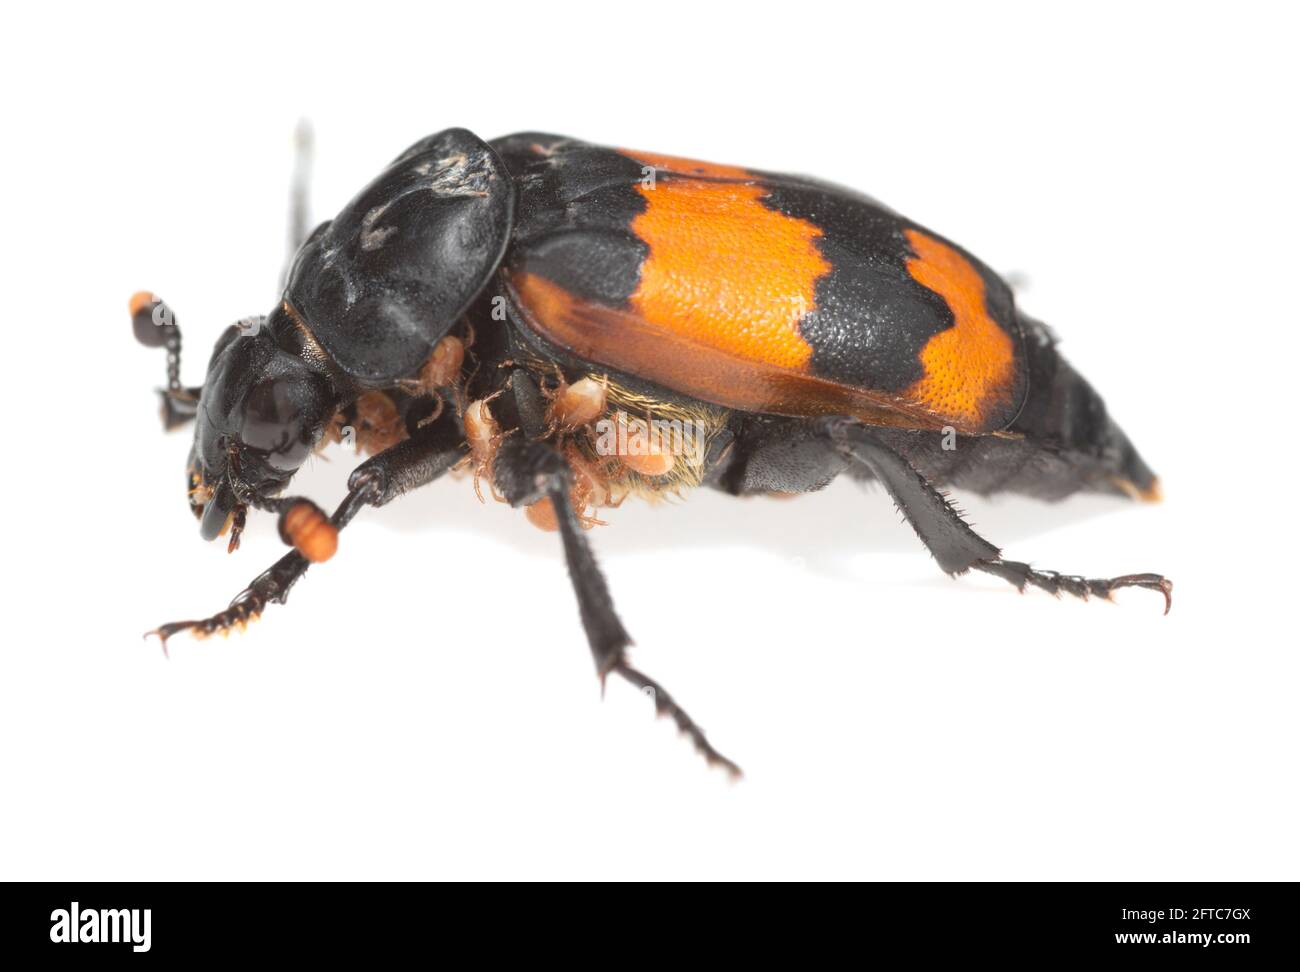 Burying beetle, Nicrophorus investigator with parasites isolated on white background Stock Photo